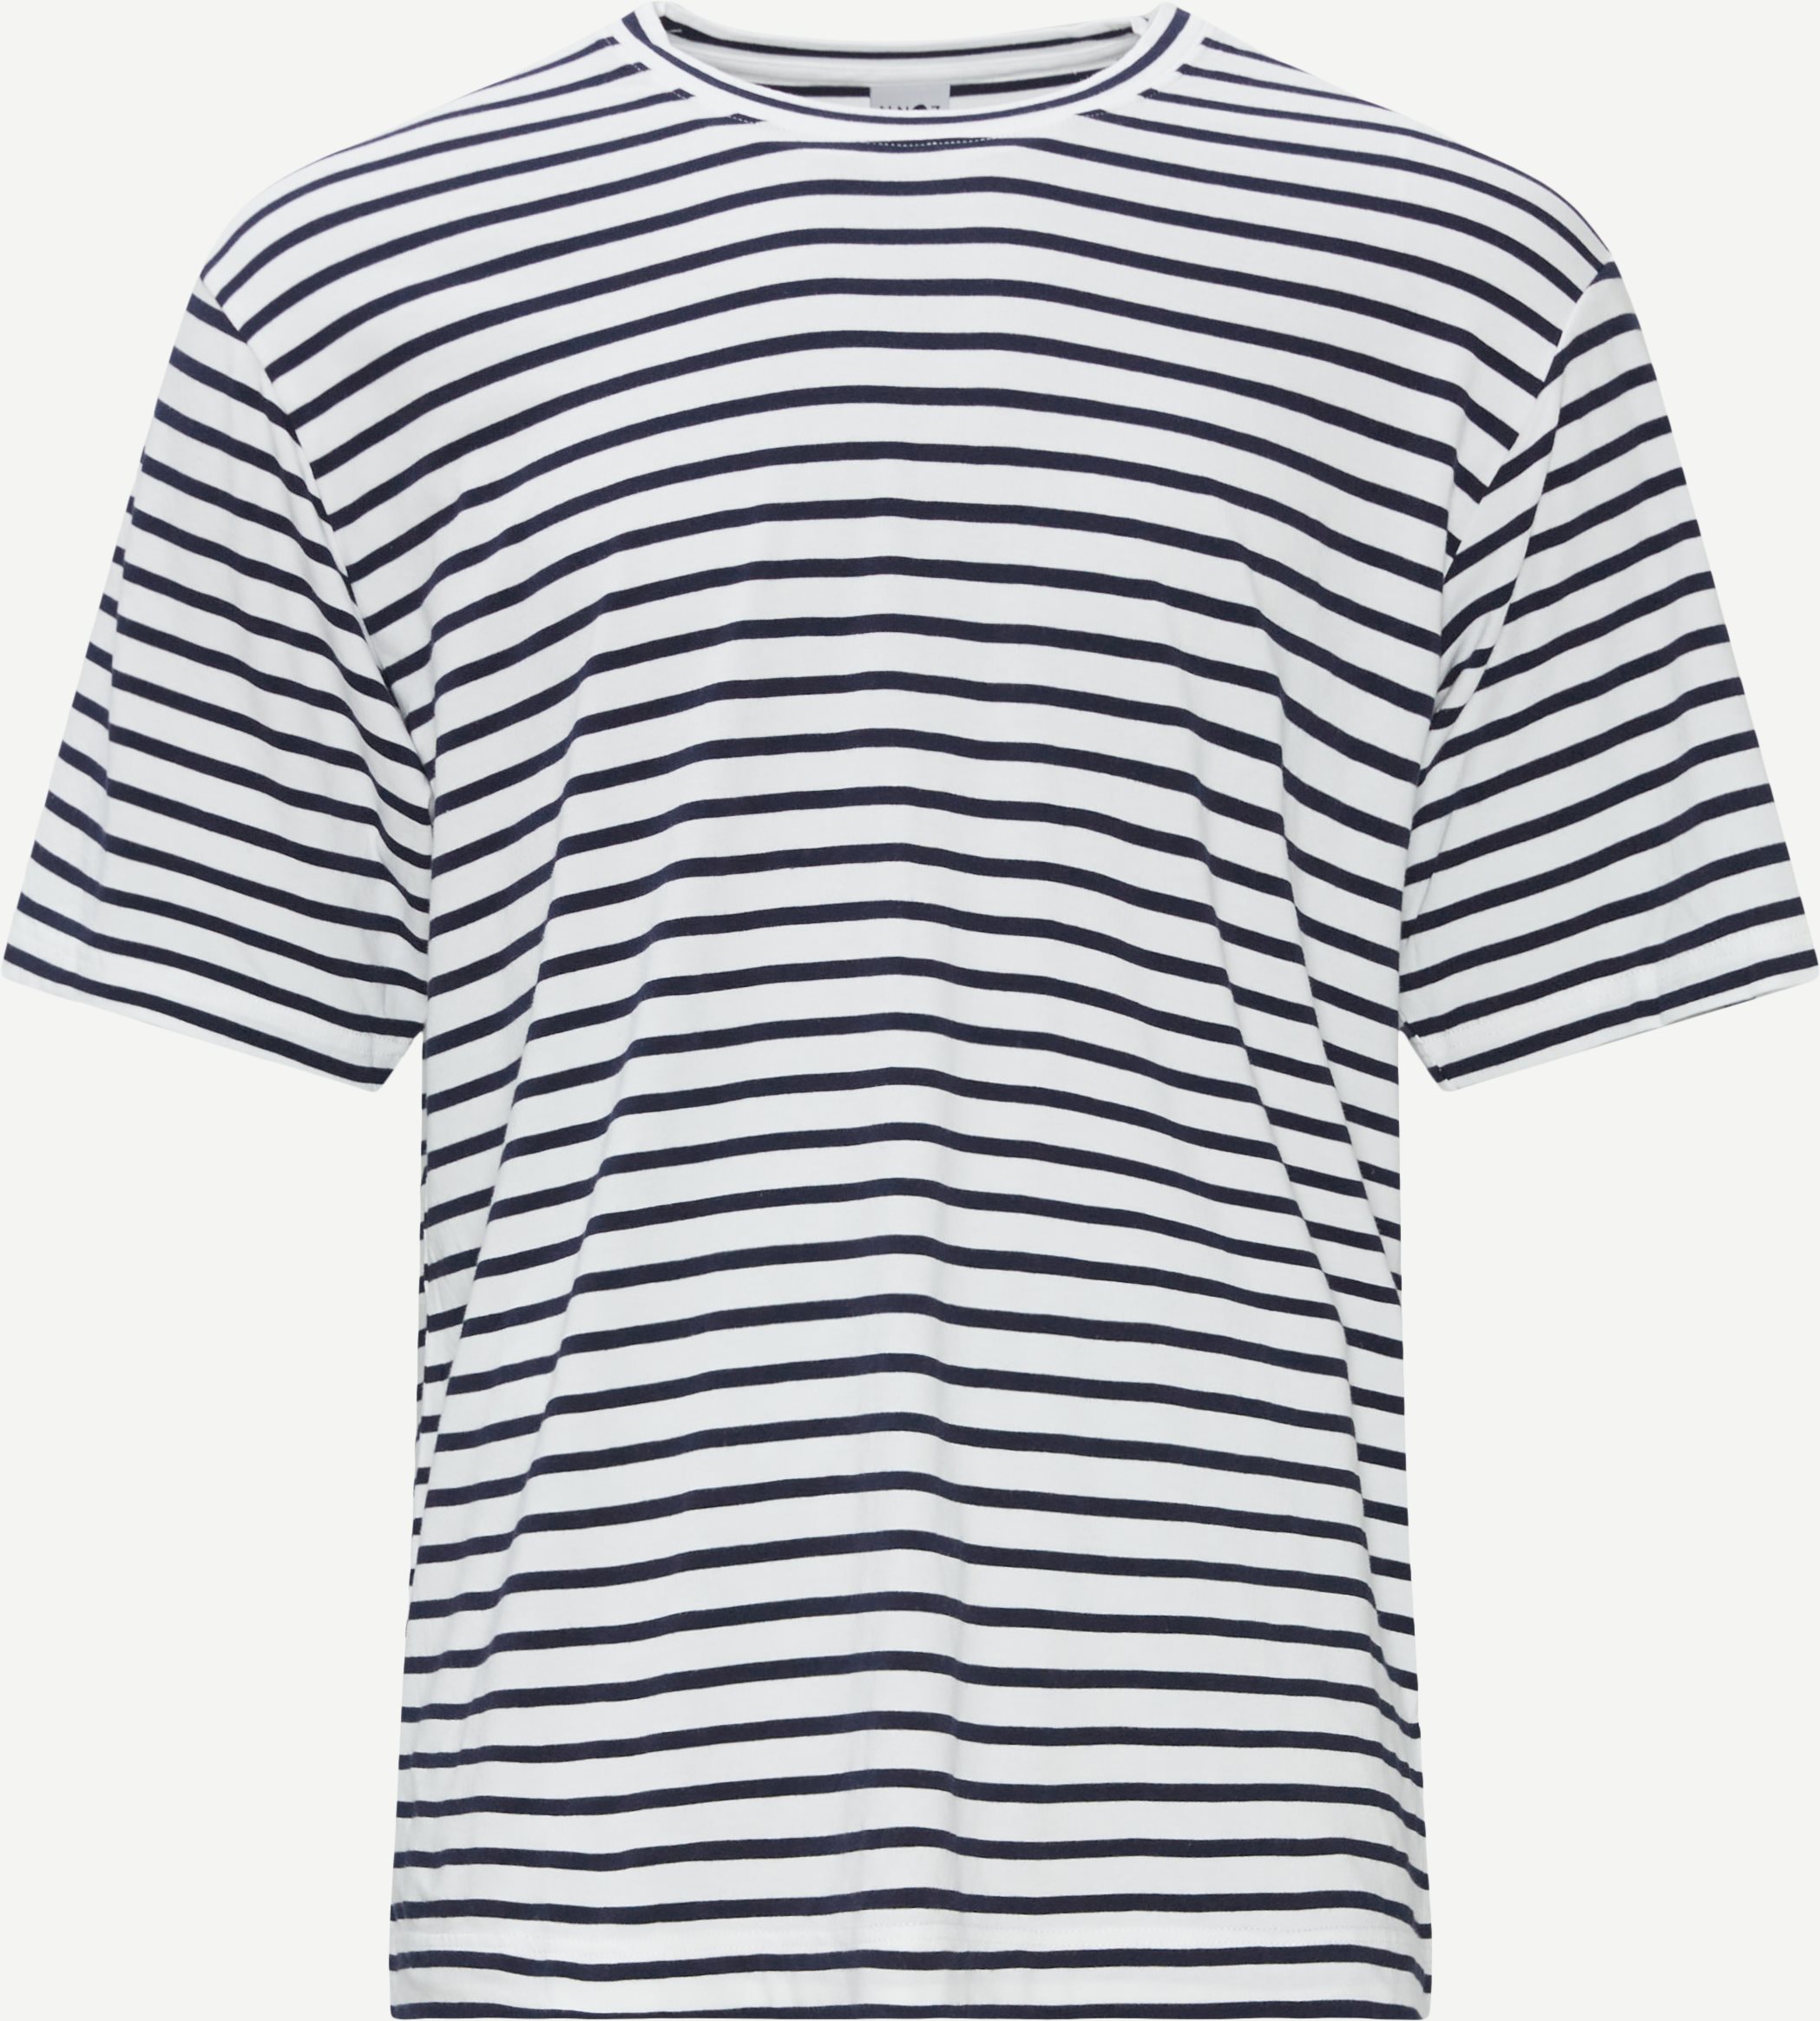 3461 Kurt T-shirt - T-shirts - Regular fit - Blå